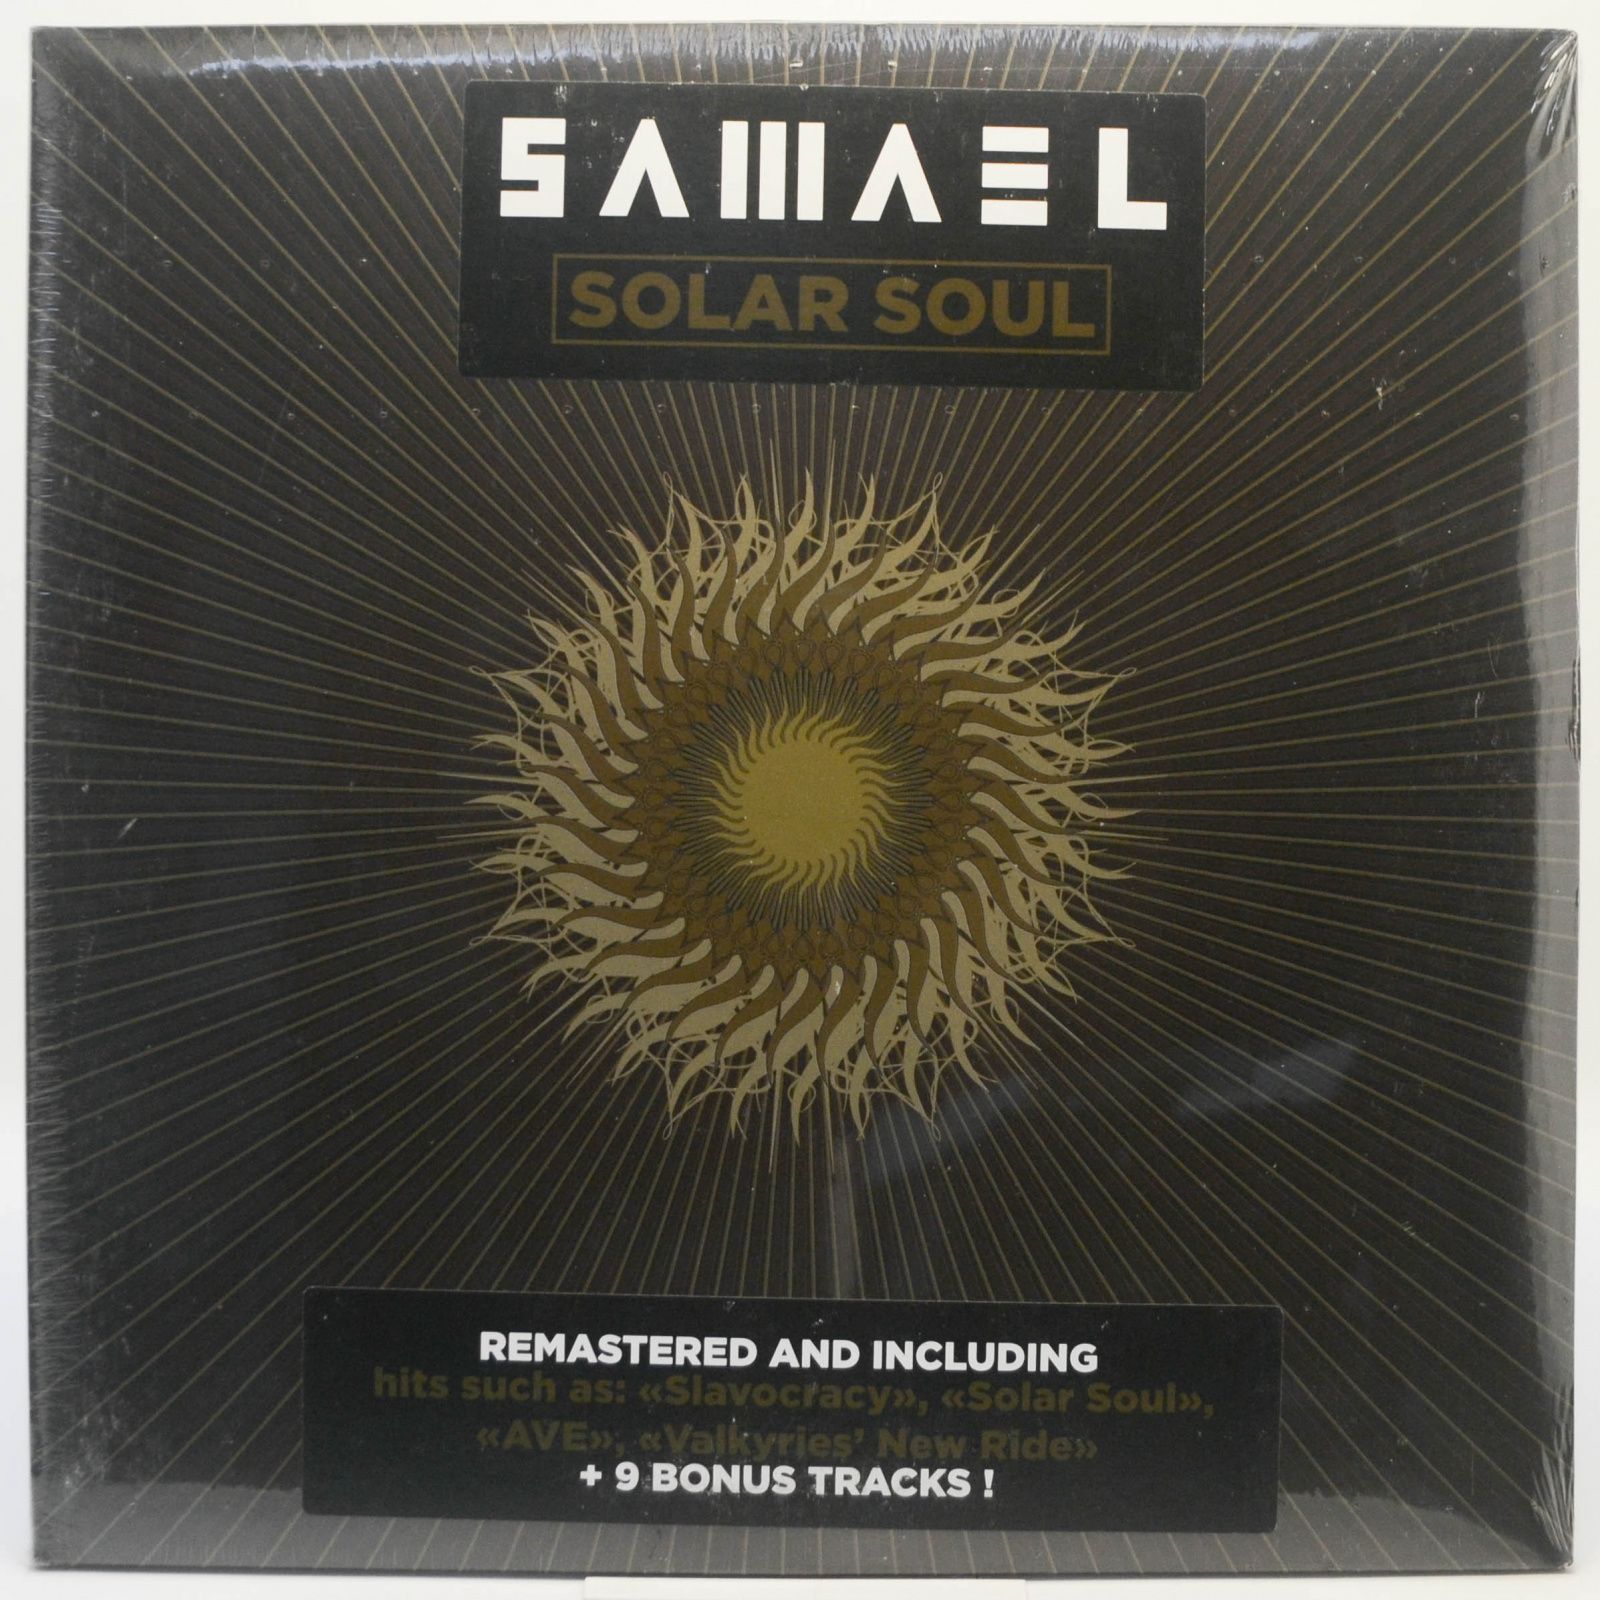 Samael — Solar Soul (2LP), 2019